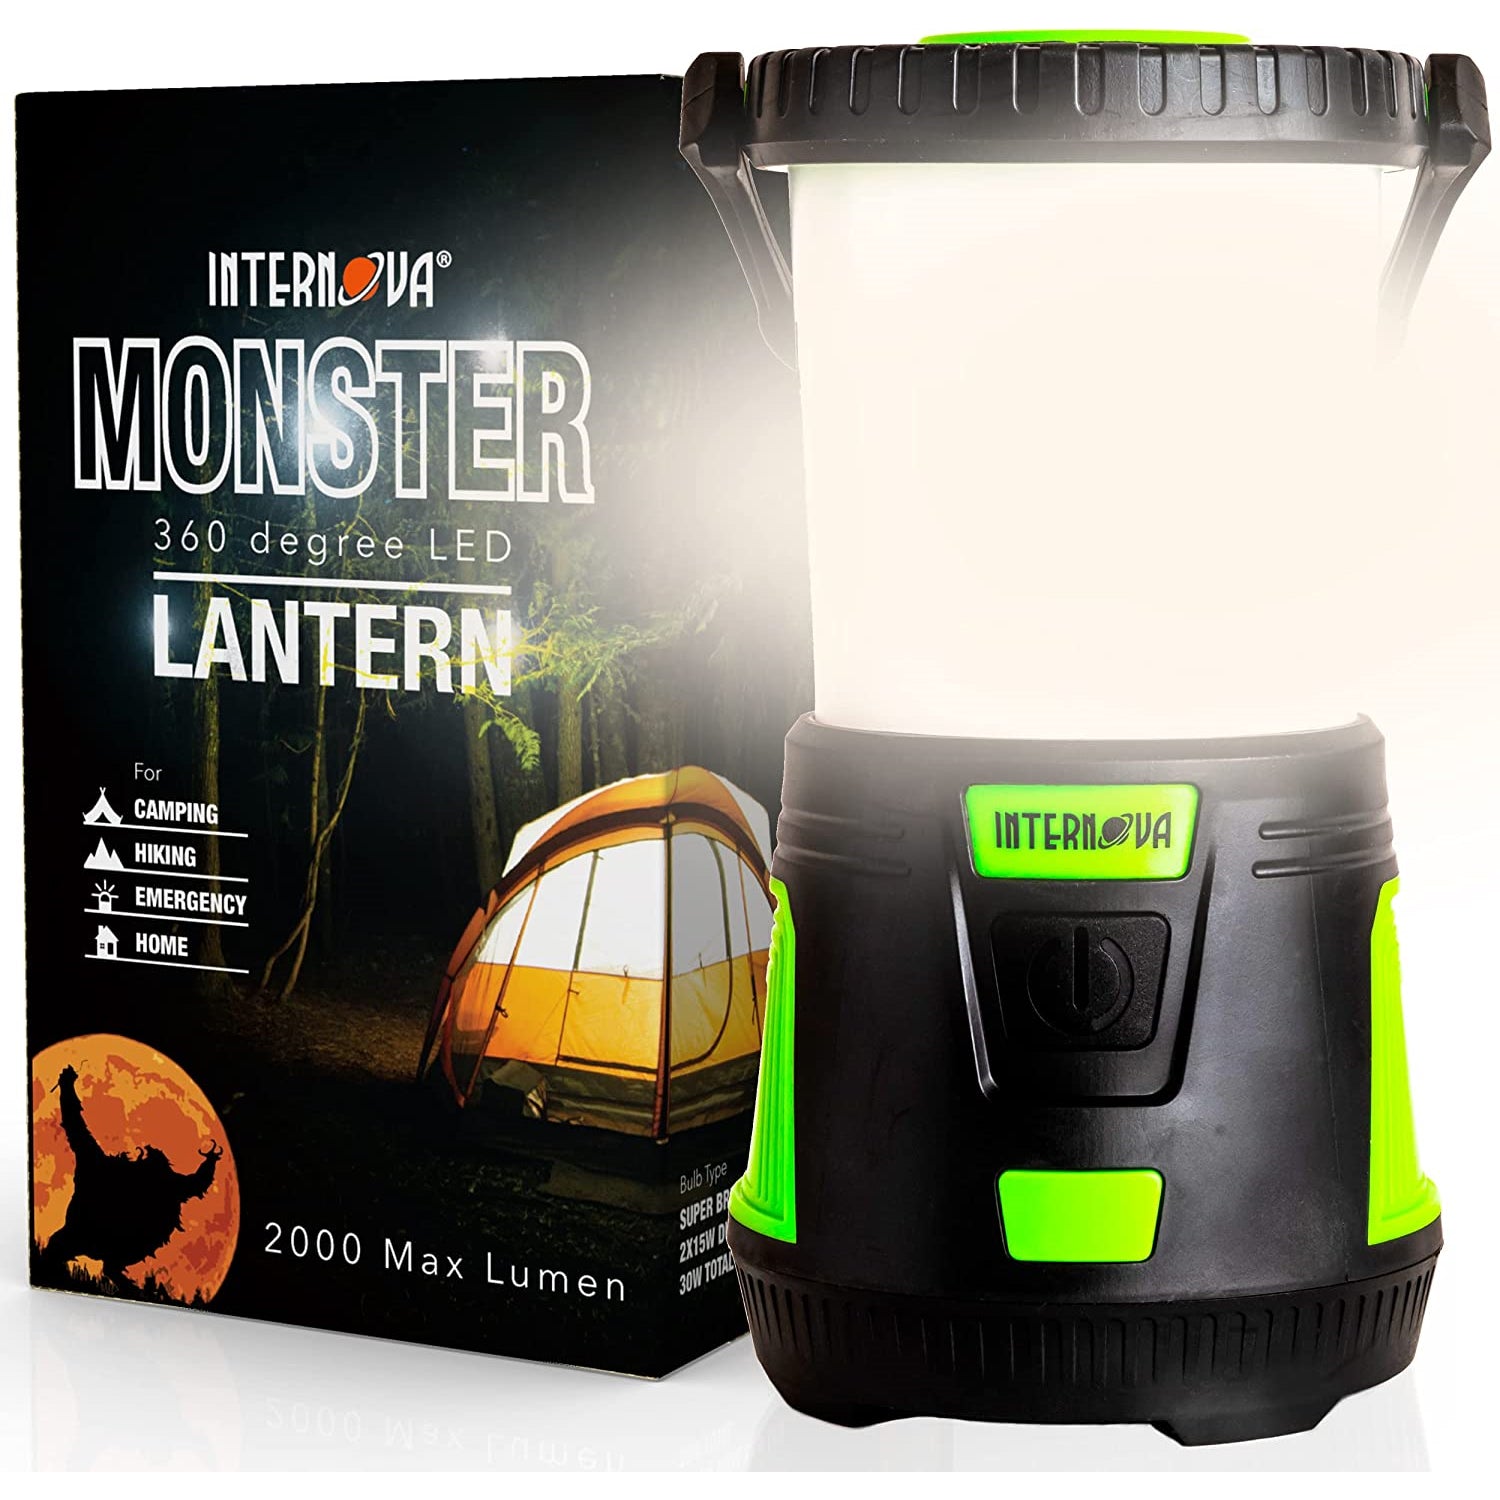 Internova Monster 360 Degree LED Camping Lantern - Intervine